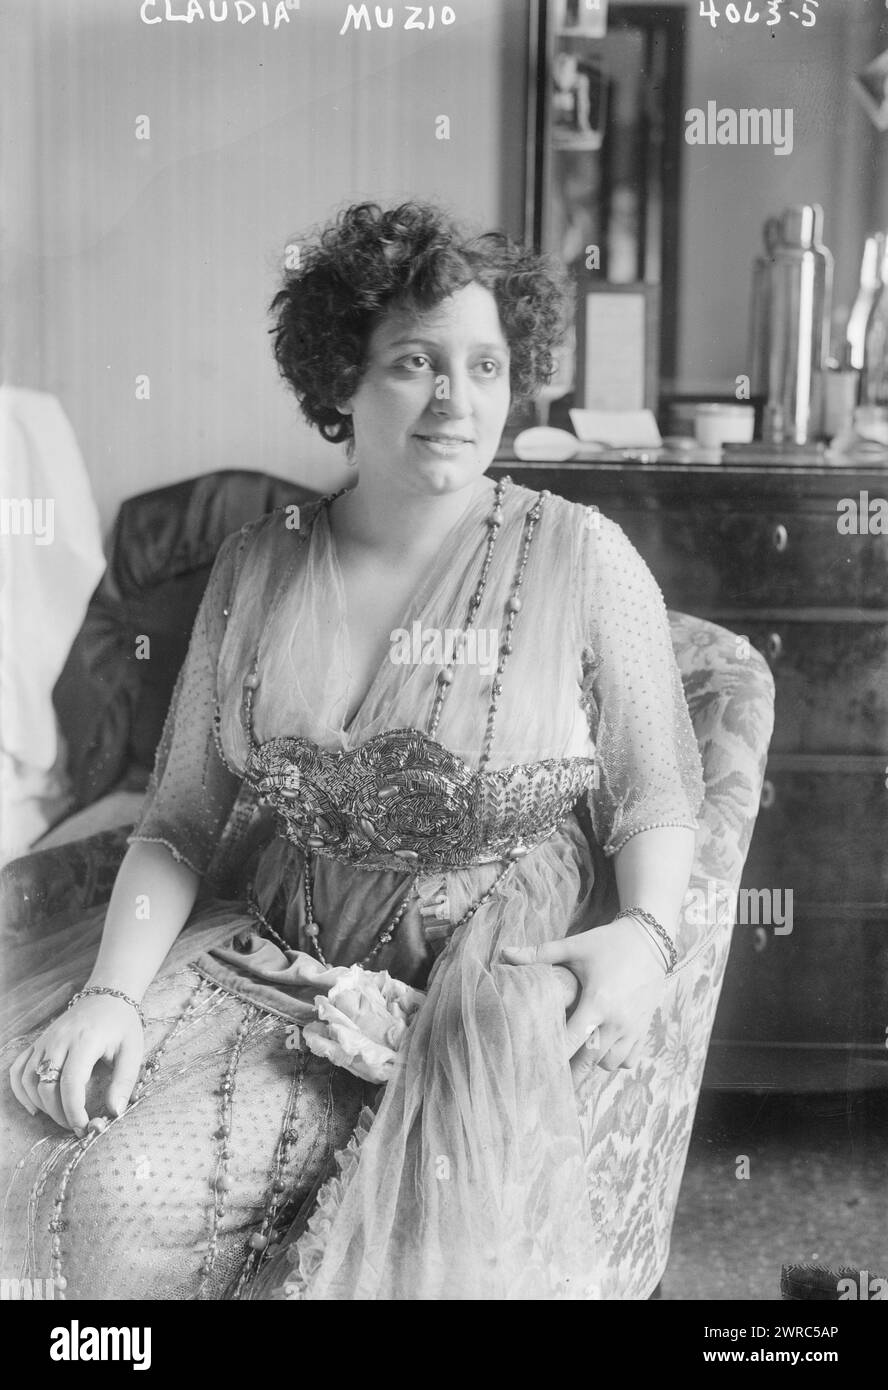 Claudia Muzio, Foto zeigt die italienische Opernsängerin Claudia Muzio (1889-1936)., zwischen ca. 1915 und ca. 1920, Glasnegative, 1 negativ: Glas Stockfoto